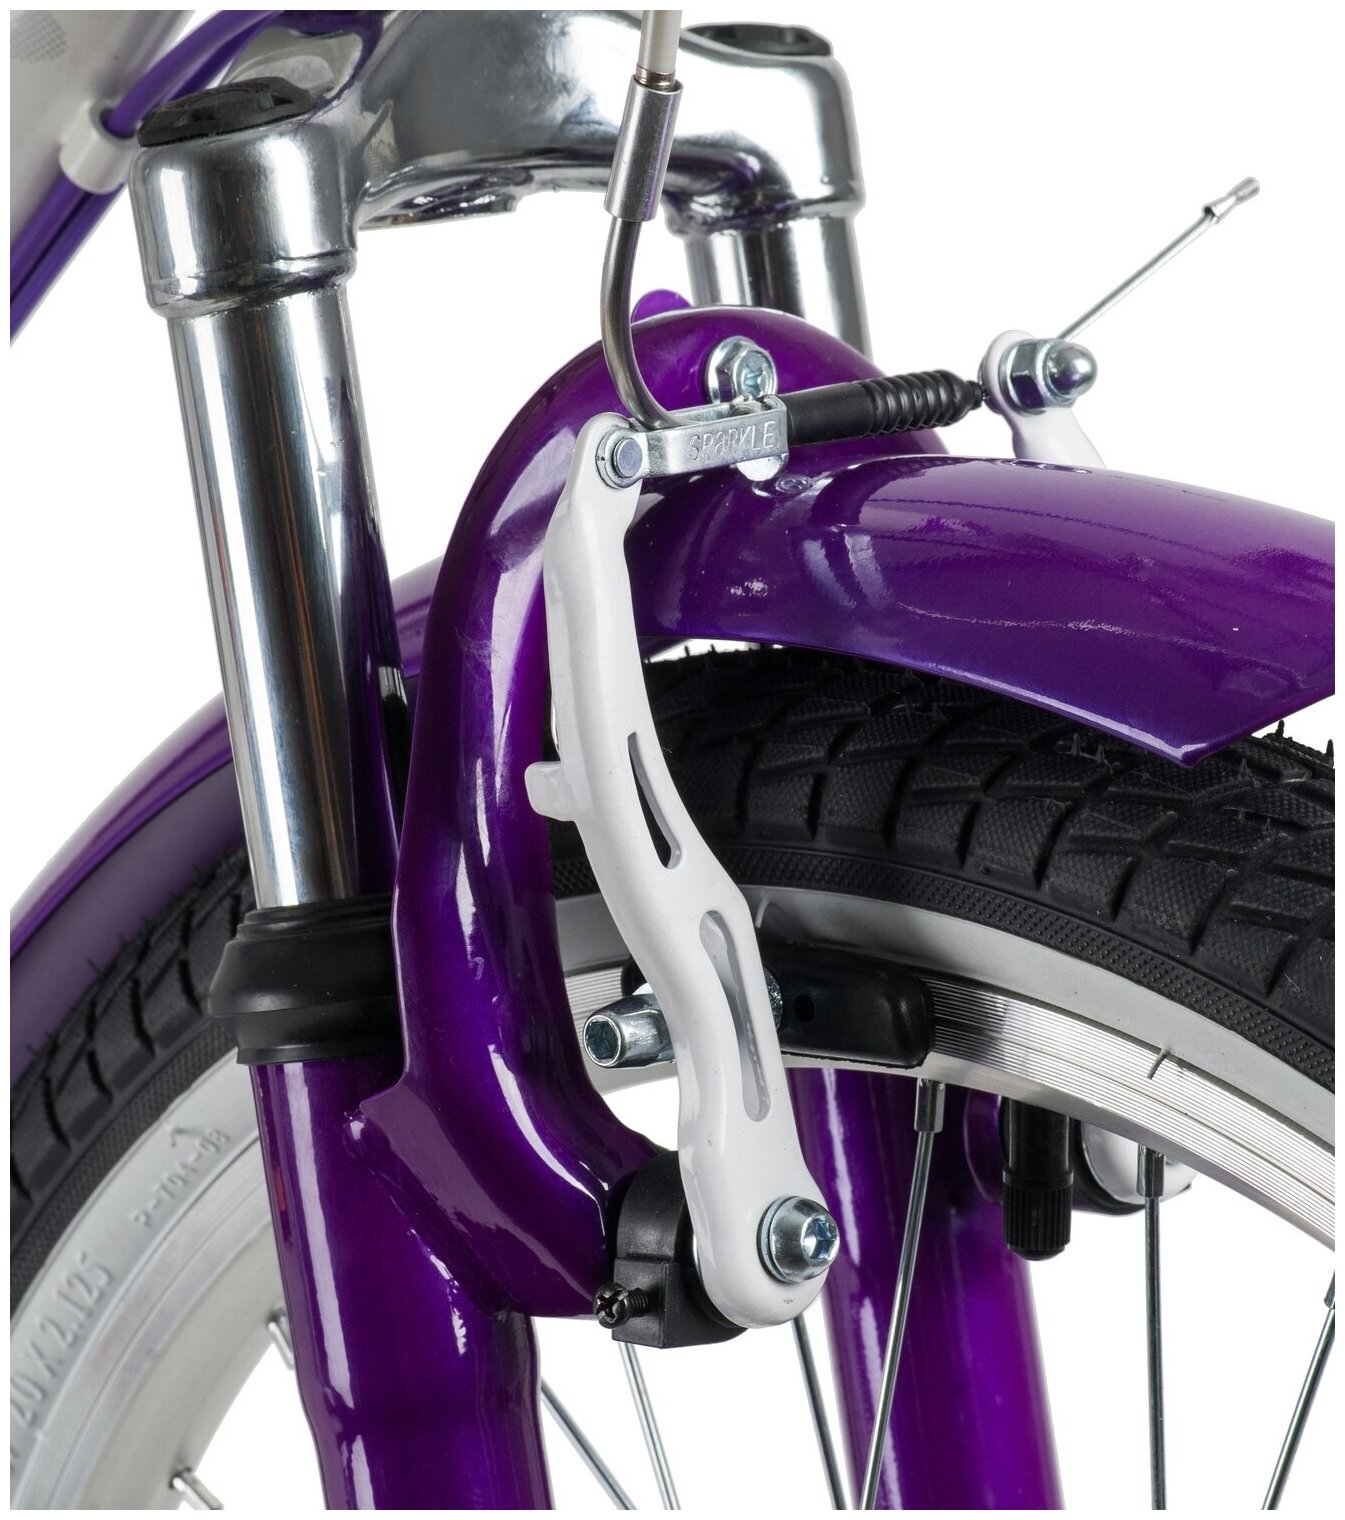 Велосипед NOVATRACK GIRLISH line 20" (2019) (Велосипед NOVATRACK 20", GIRLISH line, белый, алюм, 6 скоростей, Shimano)